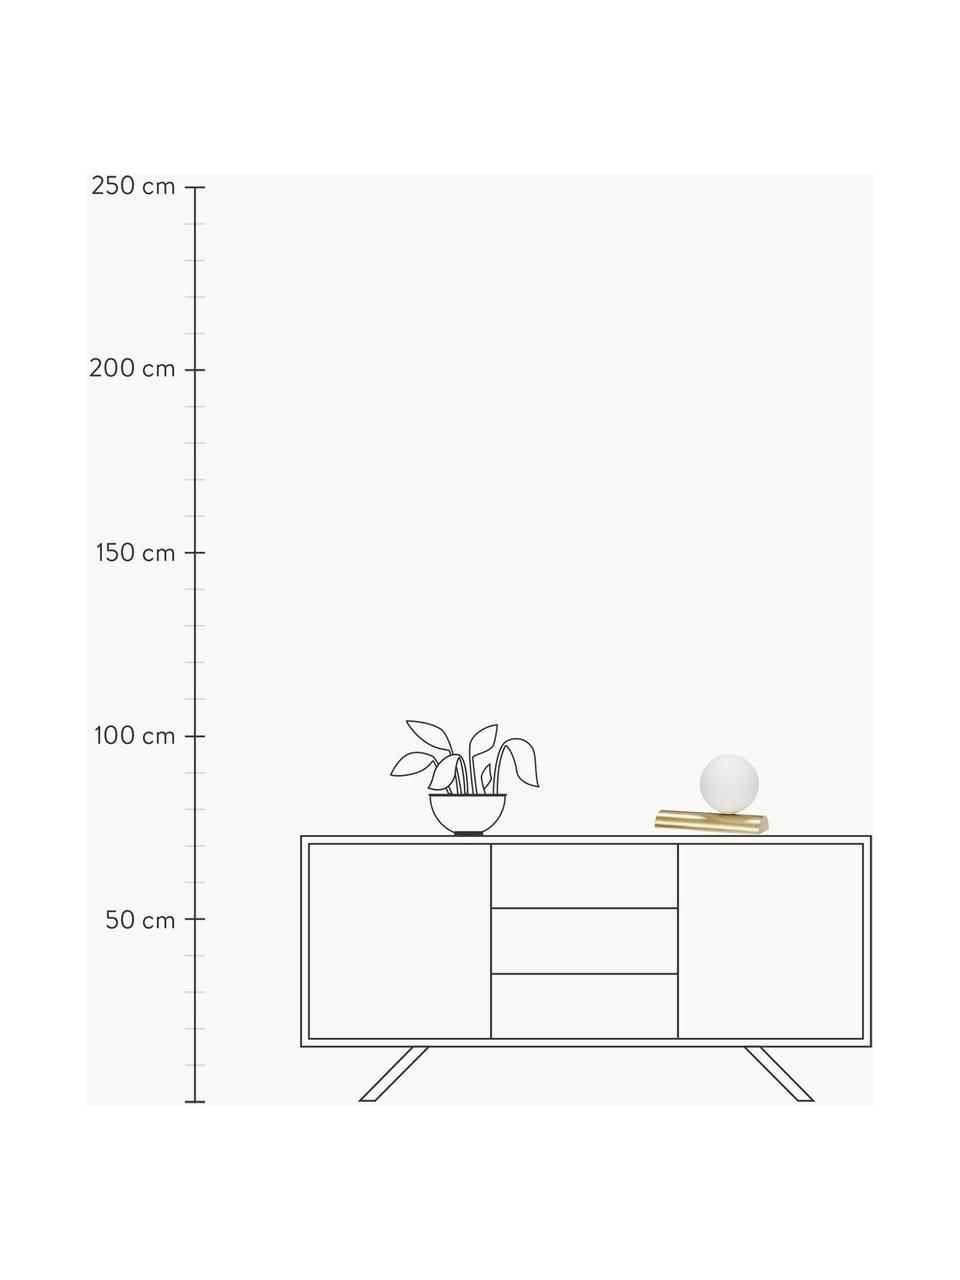 Lampa stołowa Balance, Biały, odcienie złotego, S 30 x W 22 cm